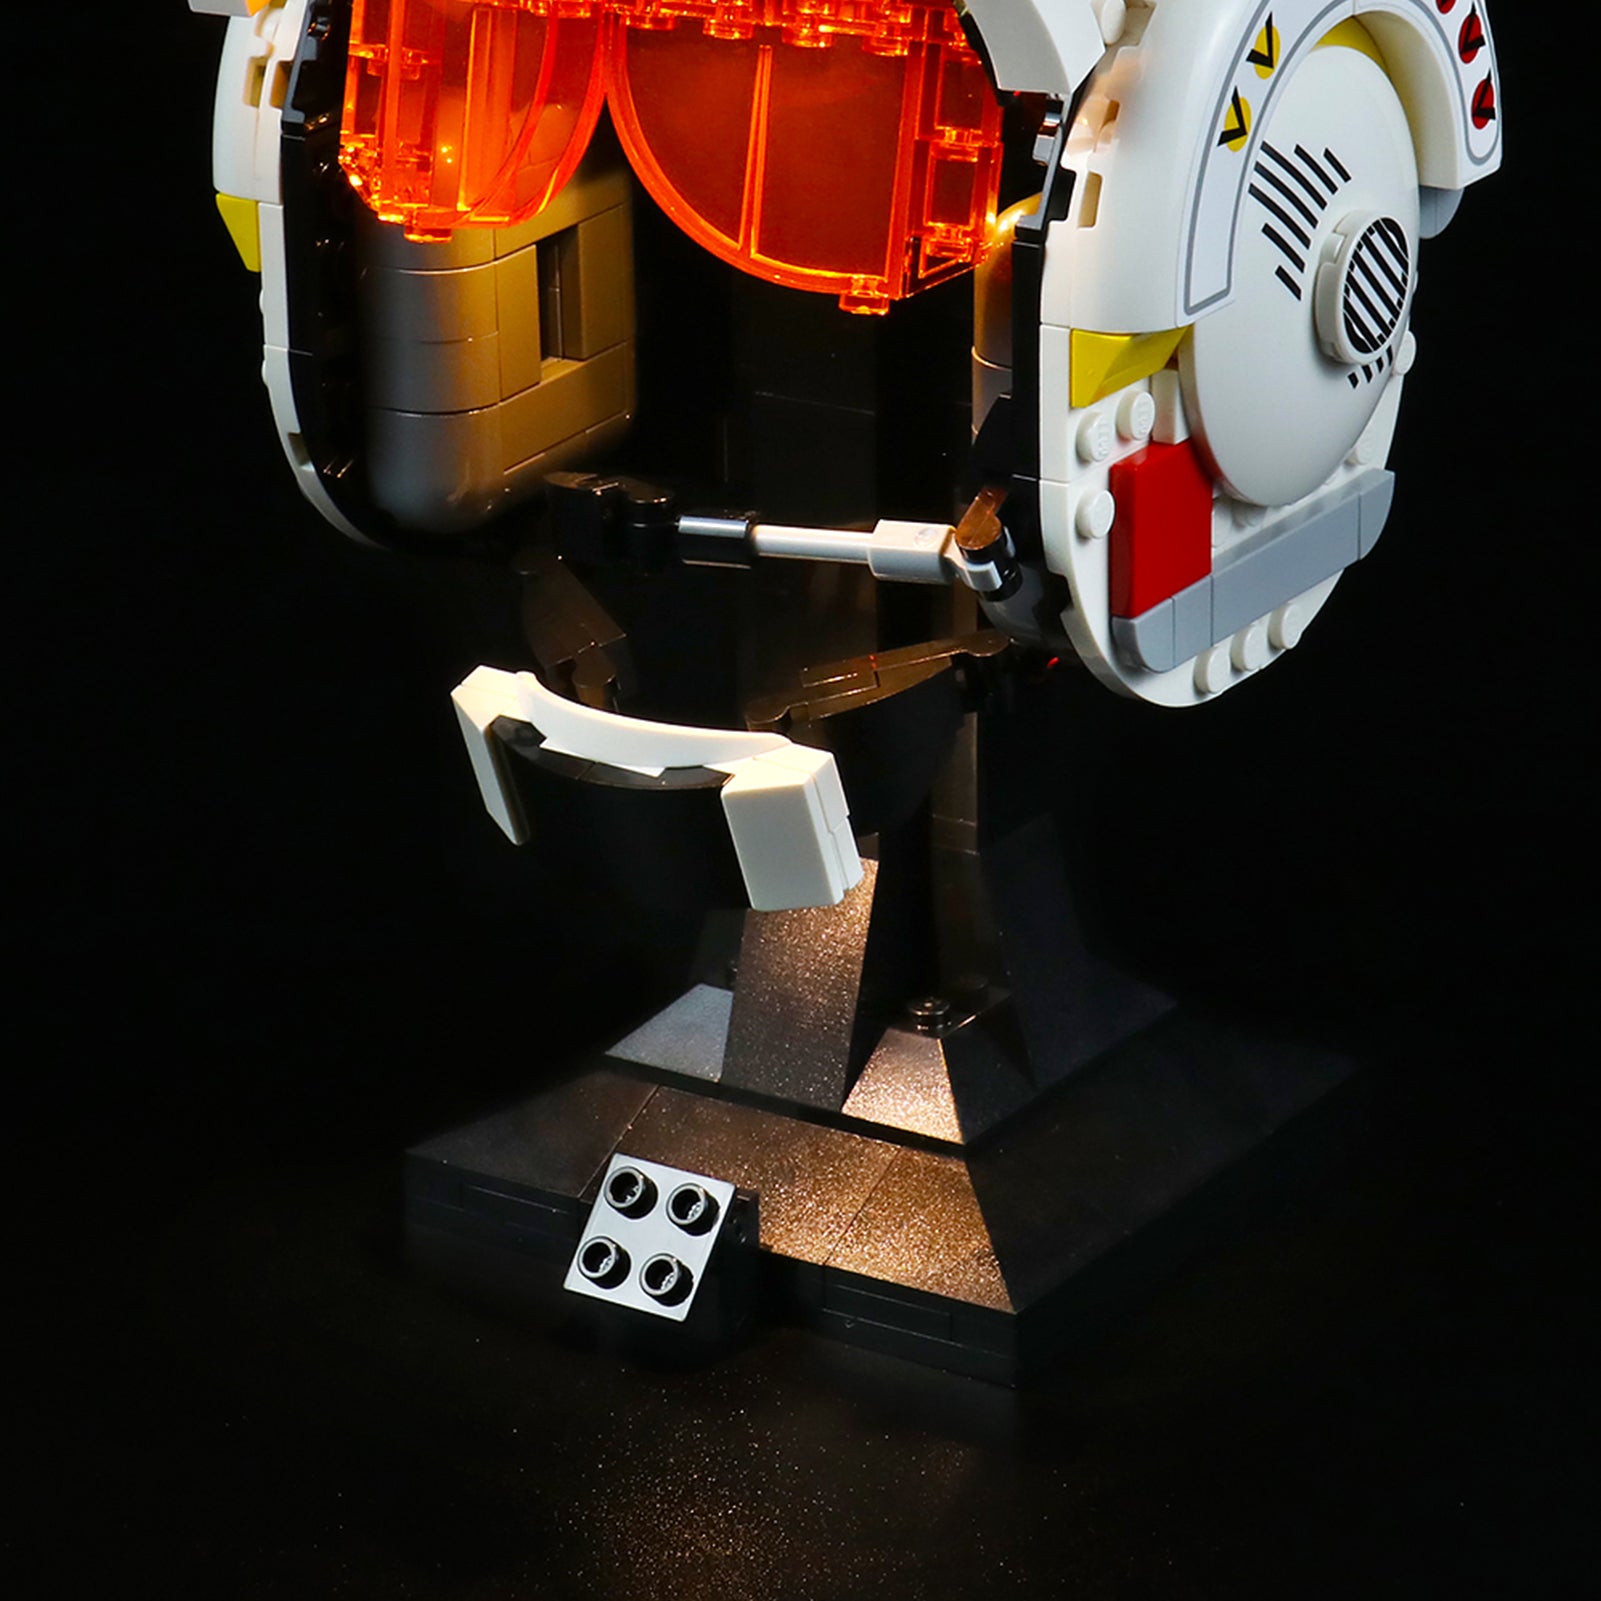 Light kit for Lego Star Wars 75327 Luke Skywalker Helmet